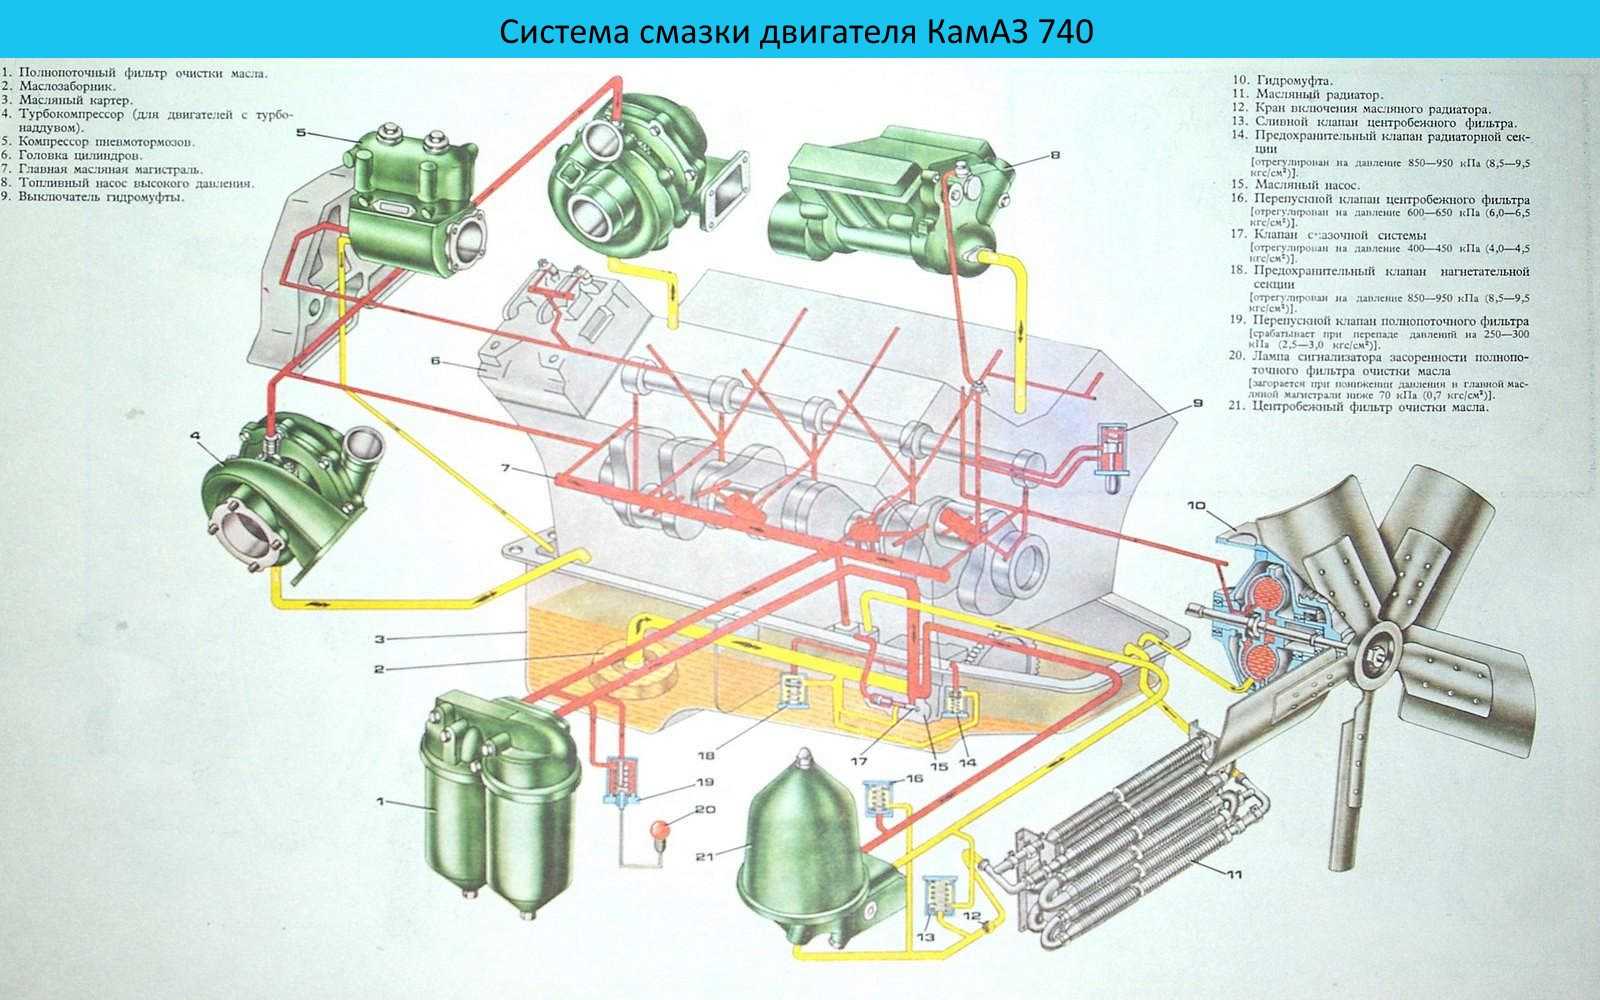 Двигатели камаз 740.11-240, 740.13-260, 740.14-300 (740.11-3902001рэ)